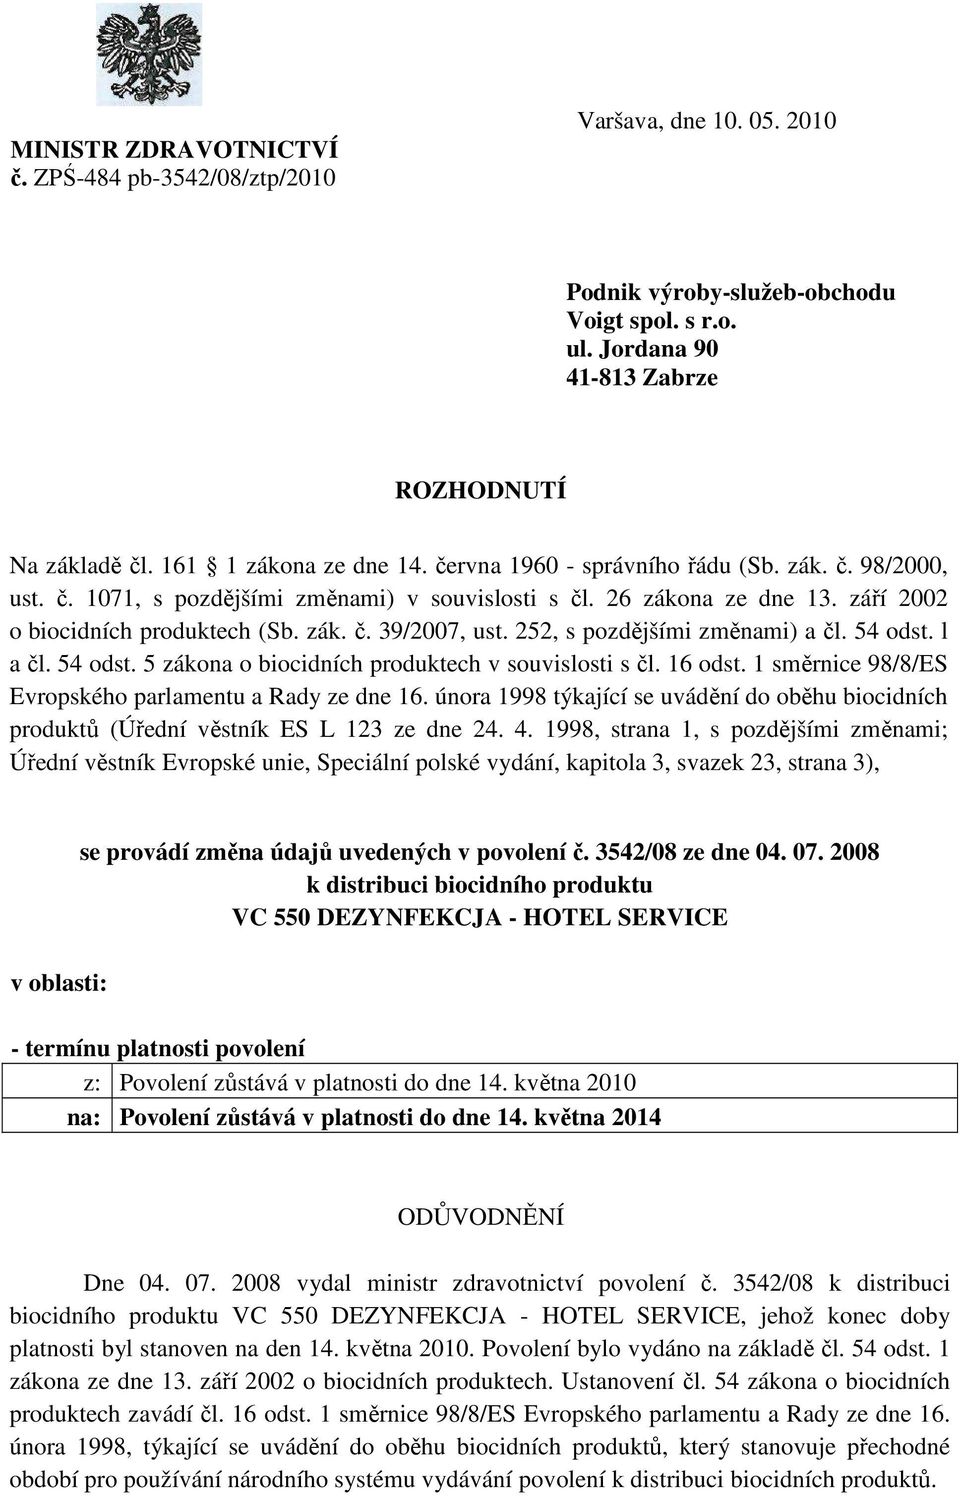 252, s pozdějšími změnami) a čl. 54 odst. l a čl. 54 odst. 5 zákona o biocidních produktech v souvislosti s čl. 16 odst. 1 směrnice 98/8/ES Evropského parlamentu a Rady ze dne 16.